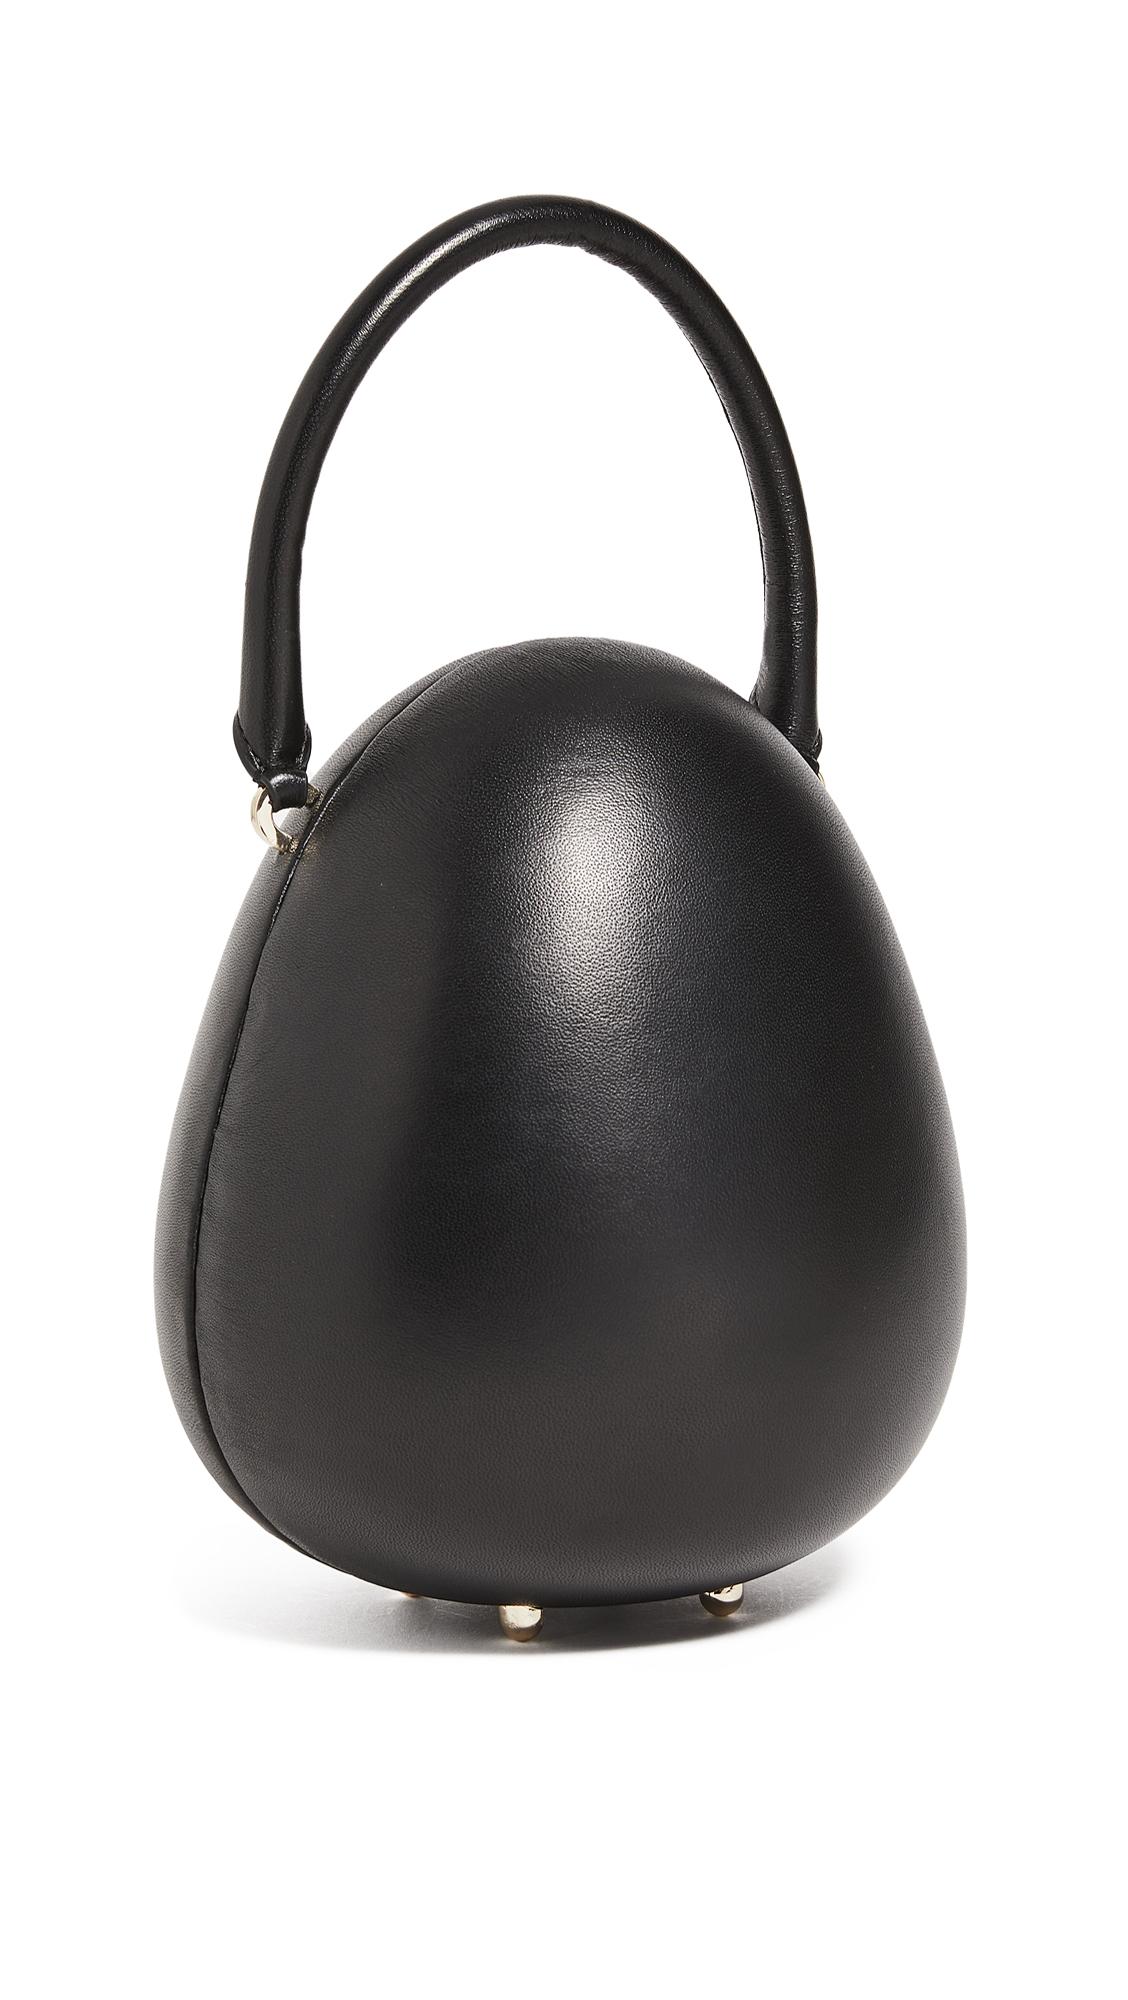 egg accessories – Egg Stroller